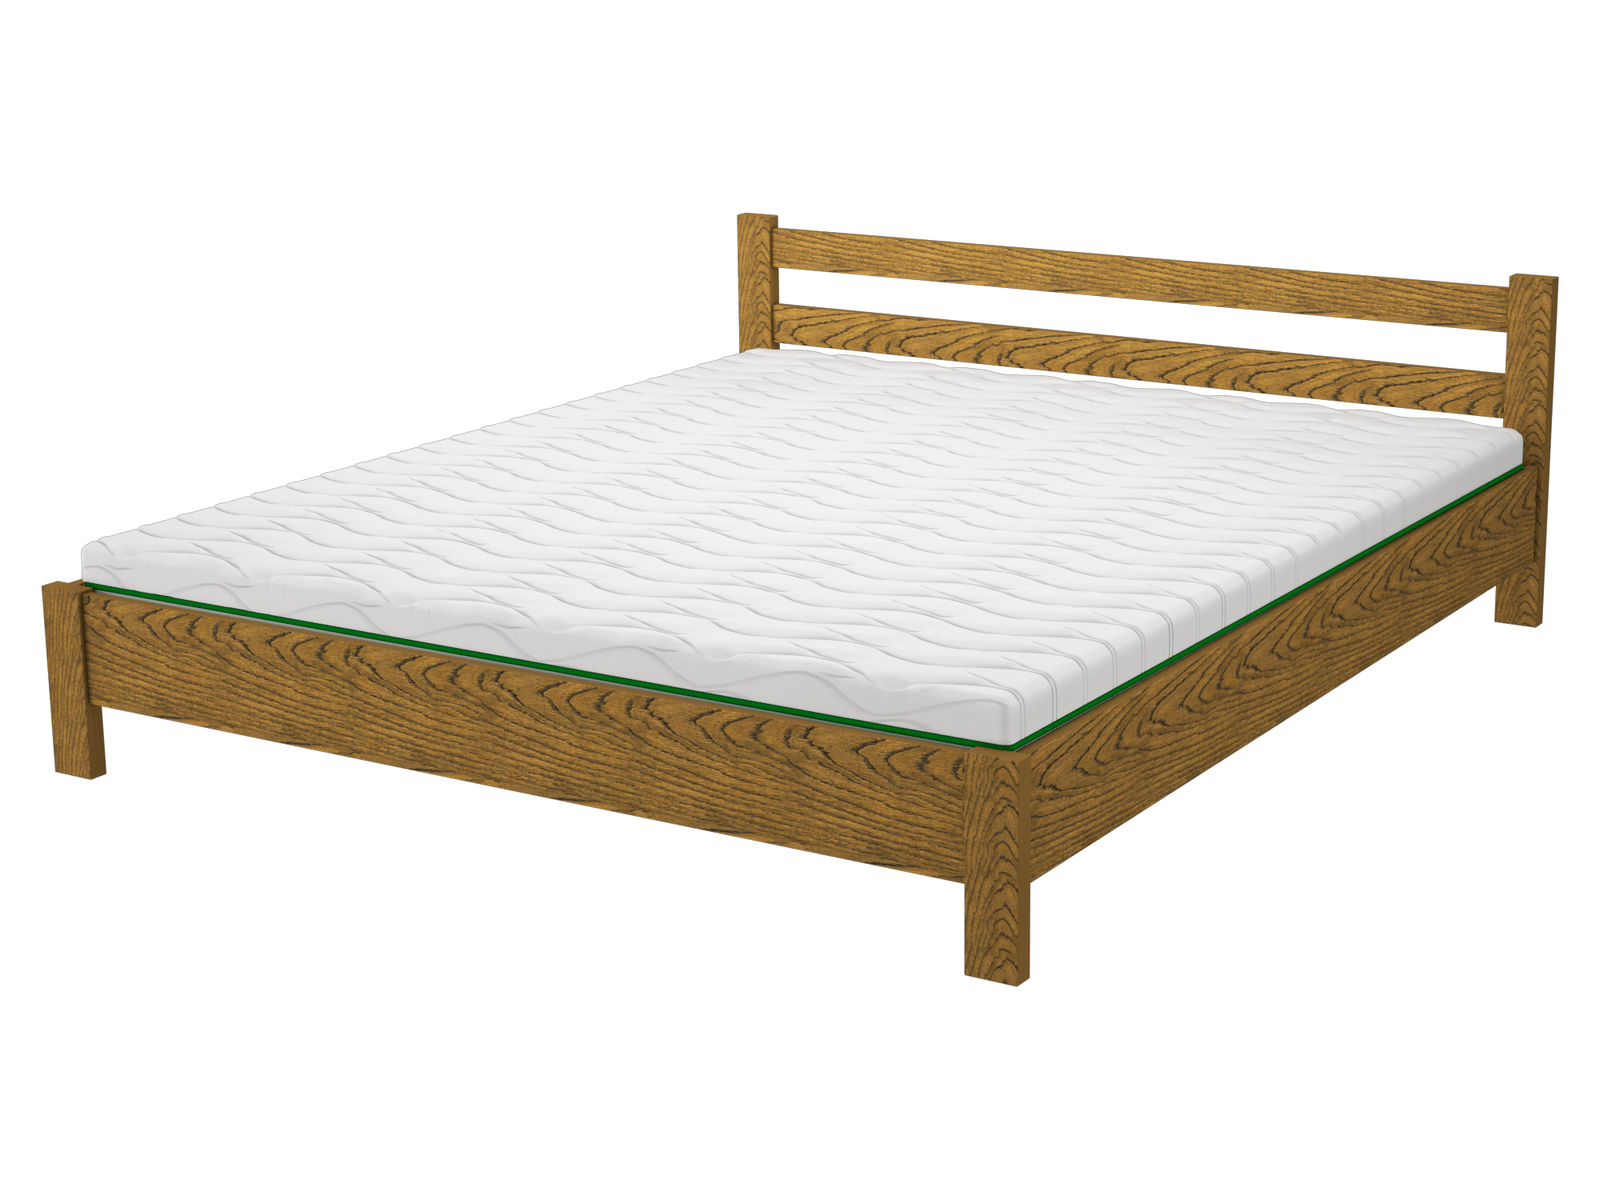 Комплект ліжко дерев'яне FWOOD Майя + матрац Air Dream Millenium